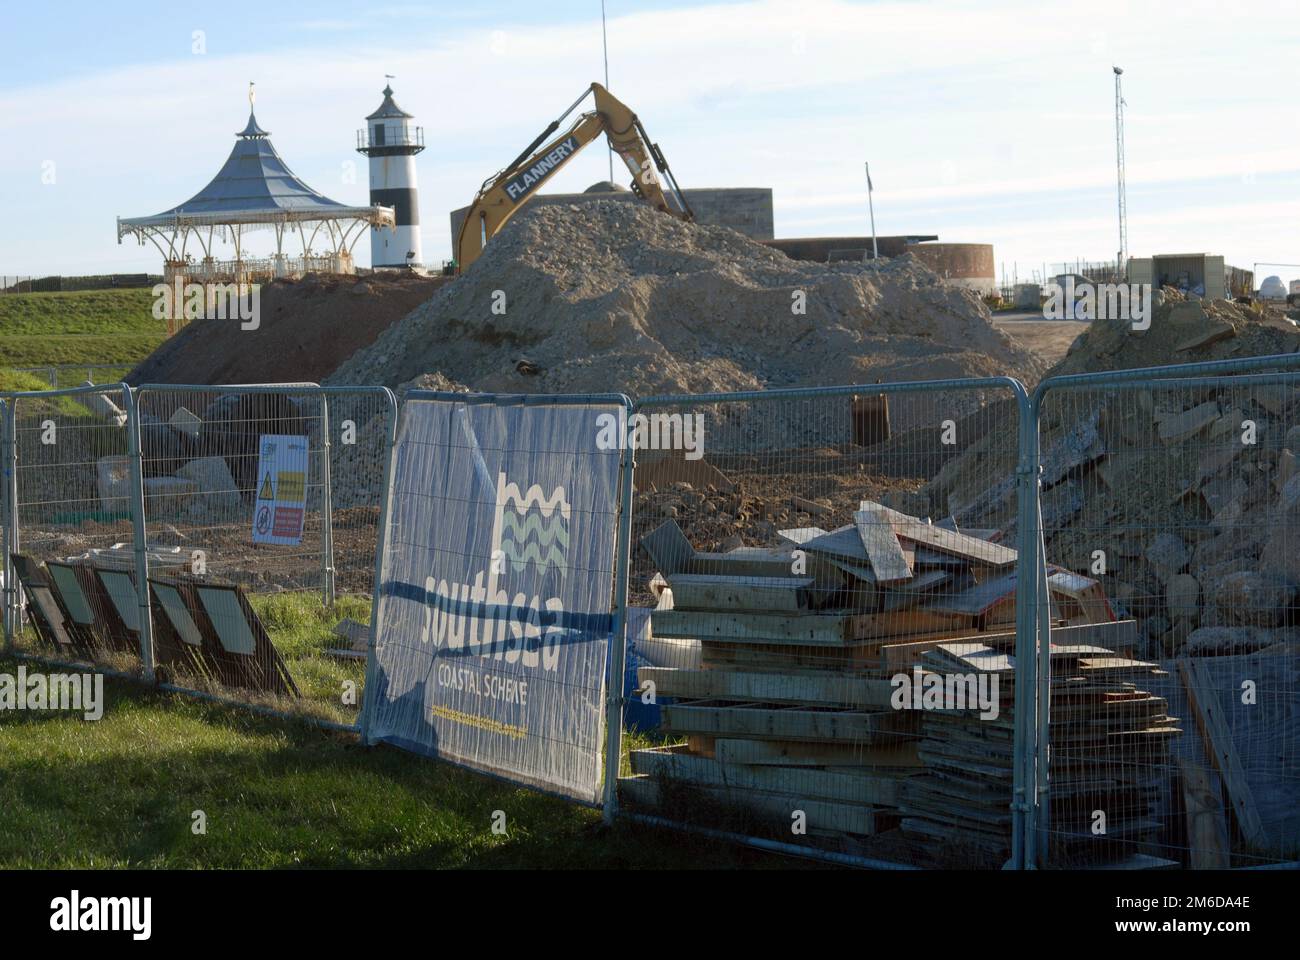 Southsea Coastal Scheme, reparaciones de muros de mar, Portsmouth, Hampshire, Reino Unido. Foto de stock